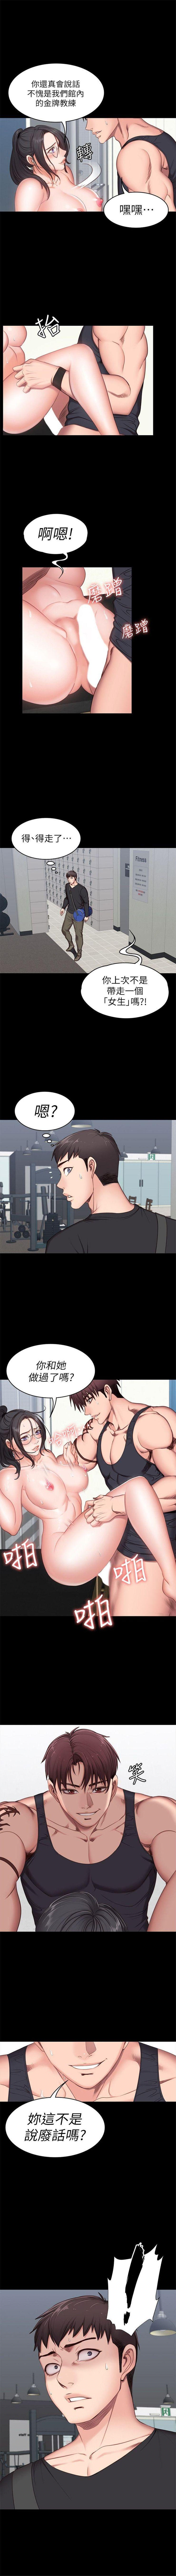 健身教练1-25 中文翻译 （更新中） 30